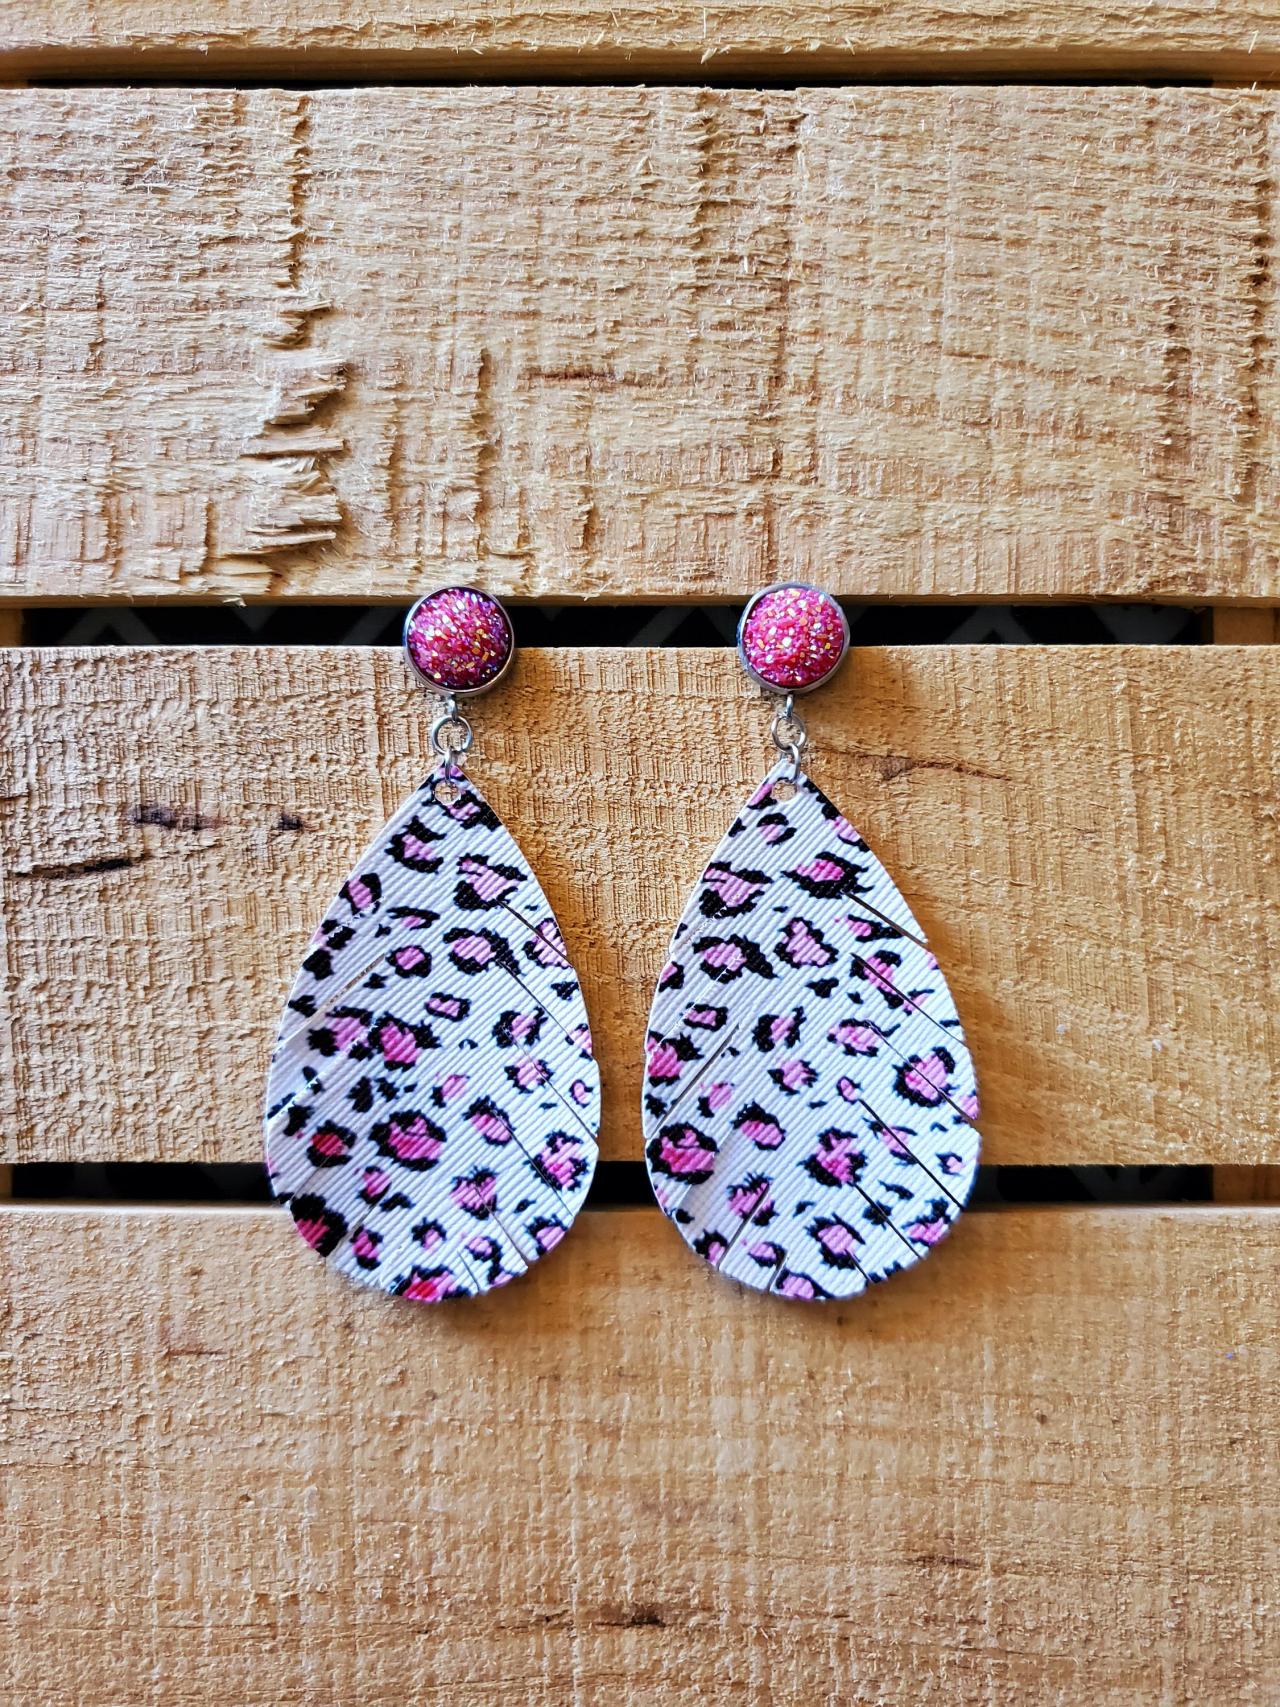 Pink Leopard Feather Earrings, Leopard Leather Earrings, Animal Print Jewelry, Druzy Earrings, Glitter Earrings, Sparkle Jewelry, Boho Chic